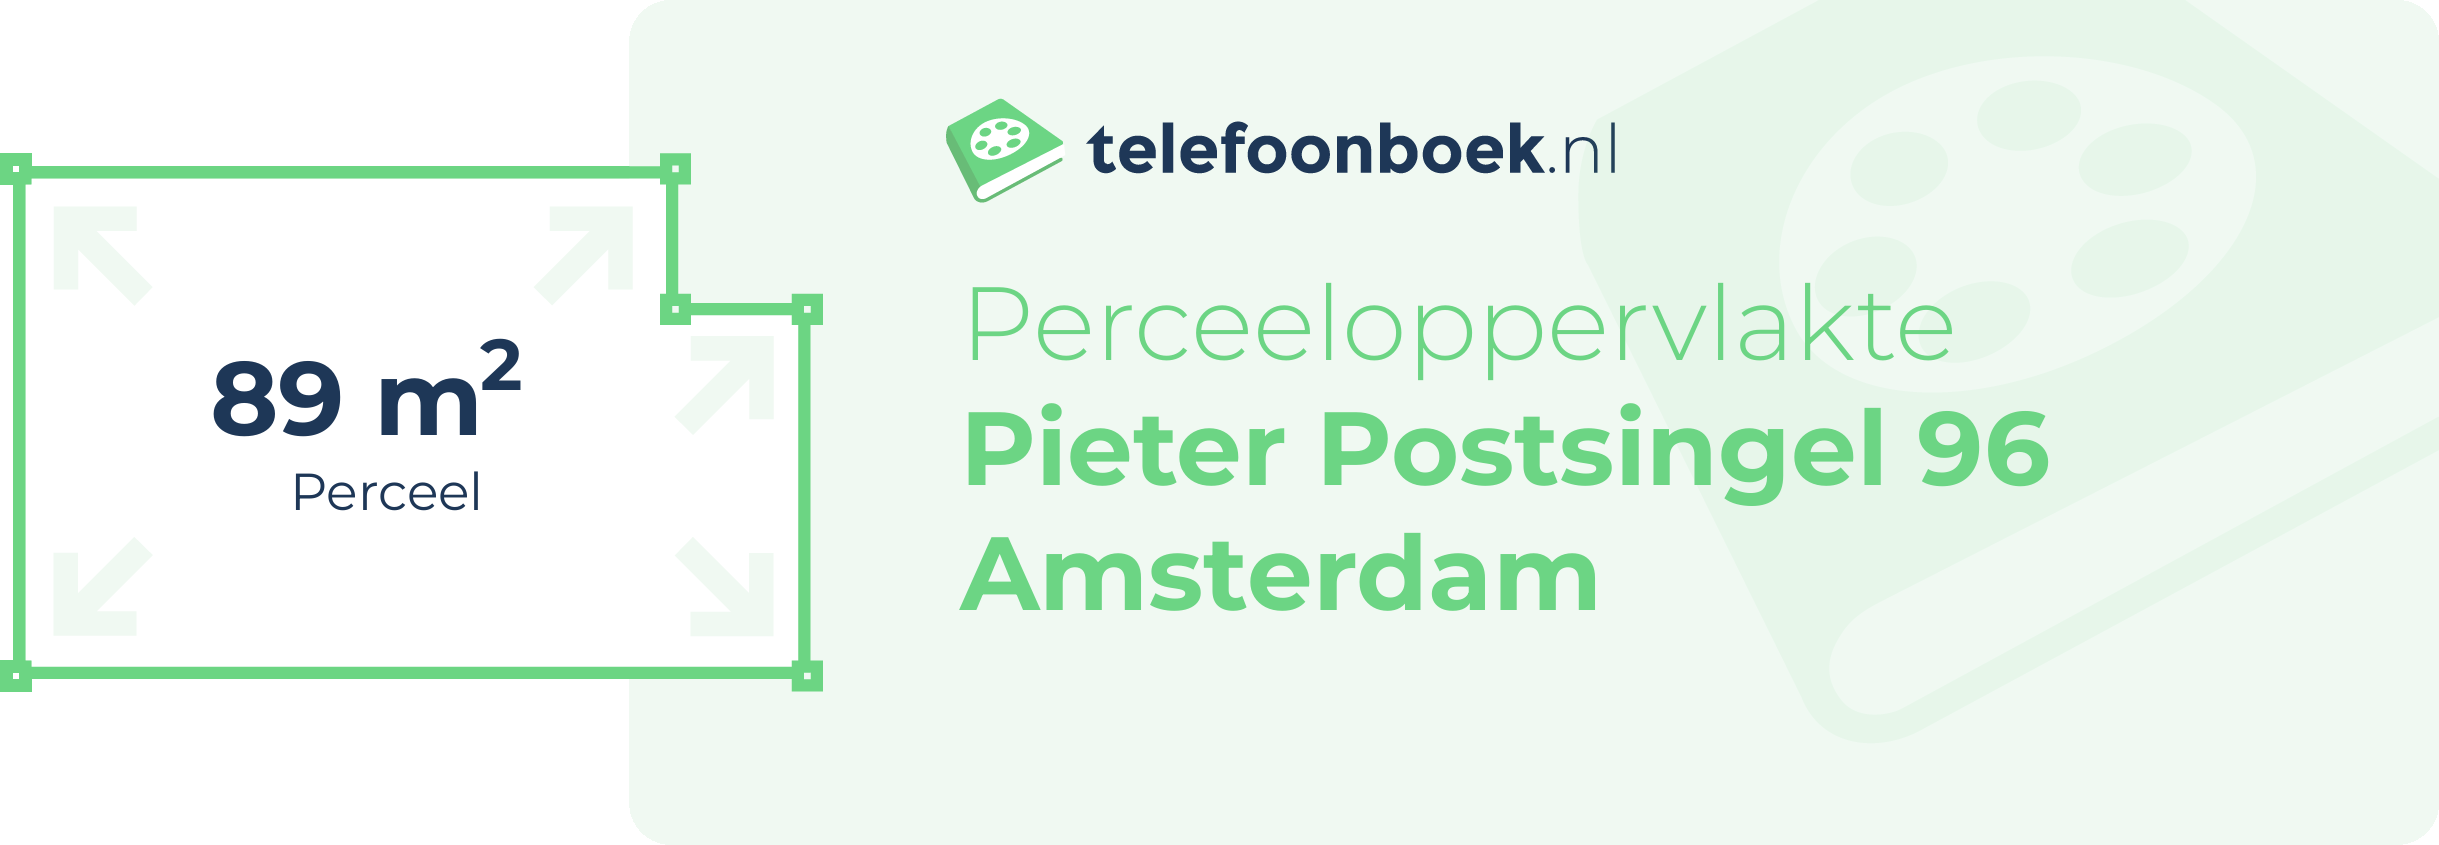 Perceeloppervlakte Pieter Postsingel 96 Amsterdam